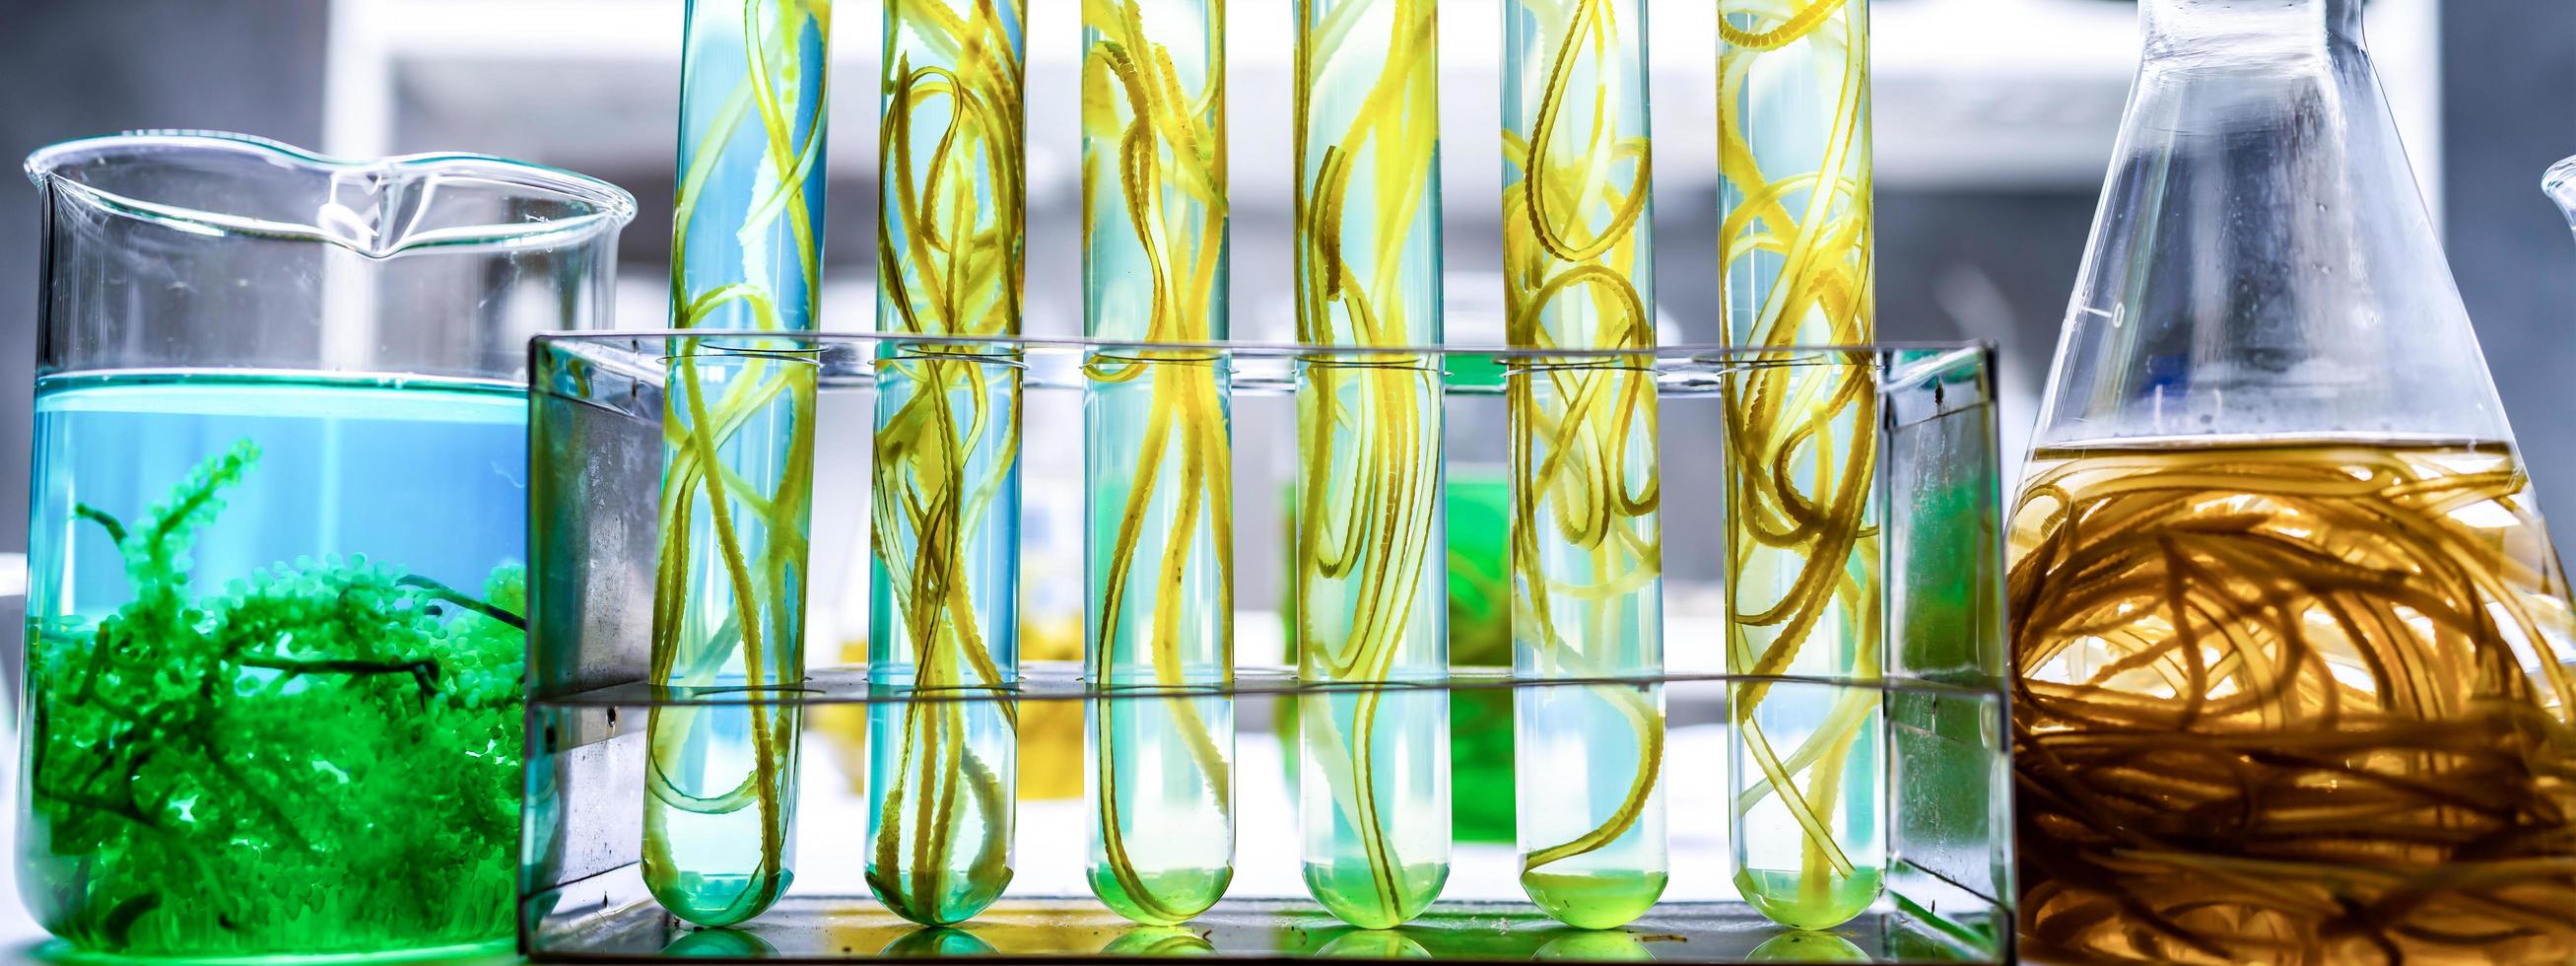 banner achtergrond van algen biotechnologie onderzoek, algen experiment onderzoek in laboratorium voor gebruik in biobrandstof energie industriële, duurzame ontwikkeling productie van biodiesel industrieel systeem foto